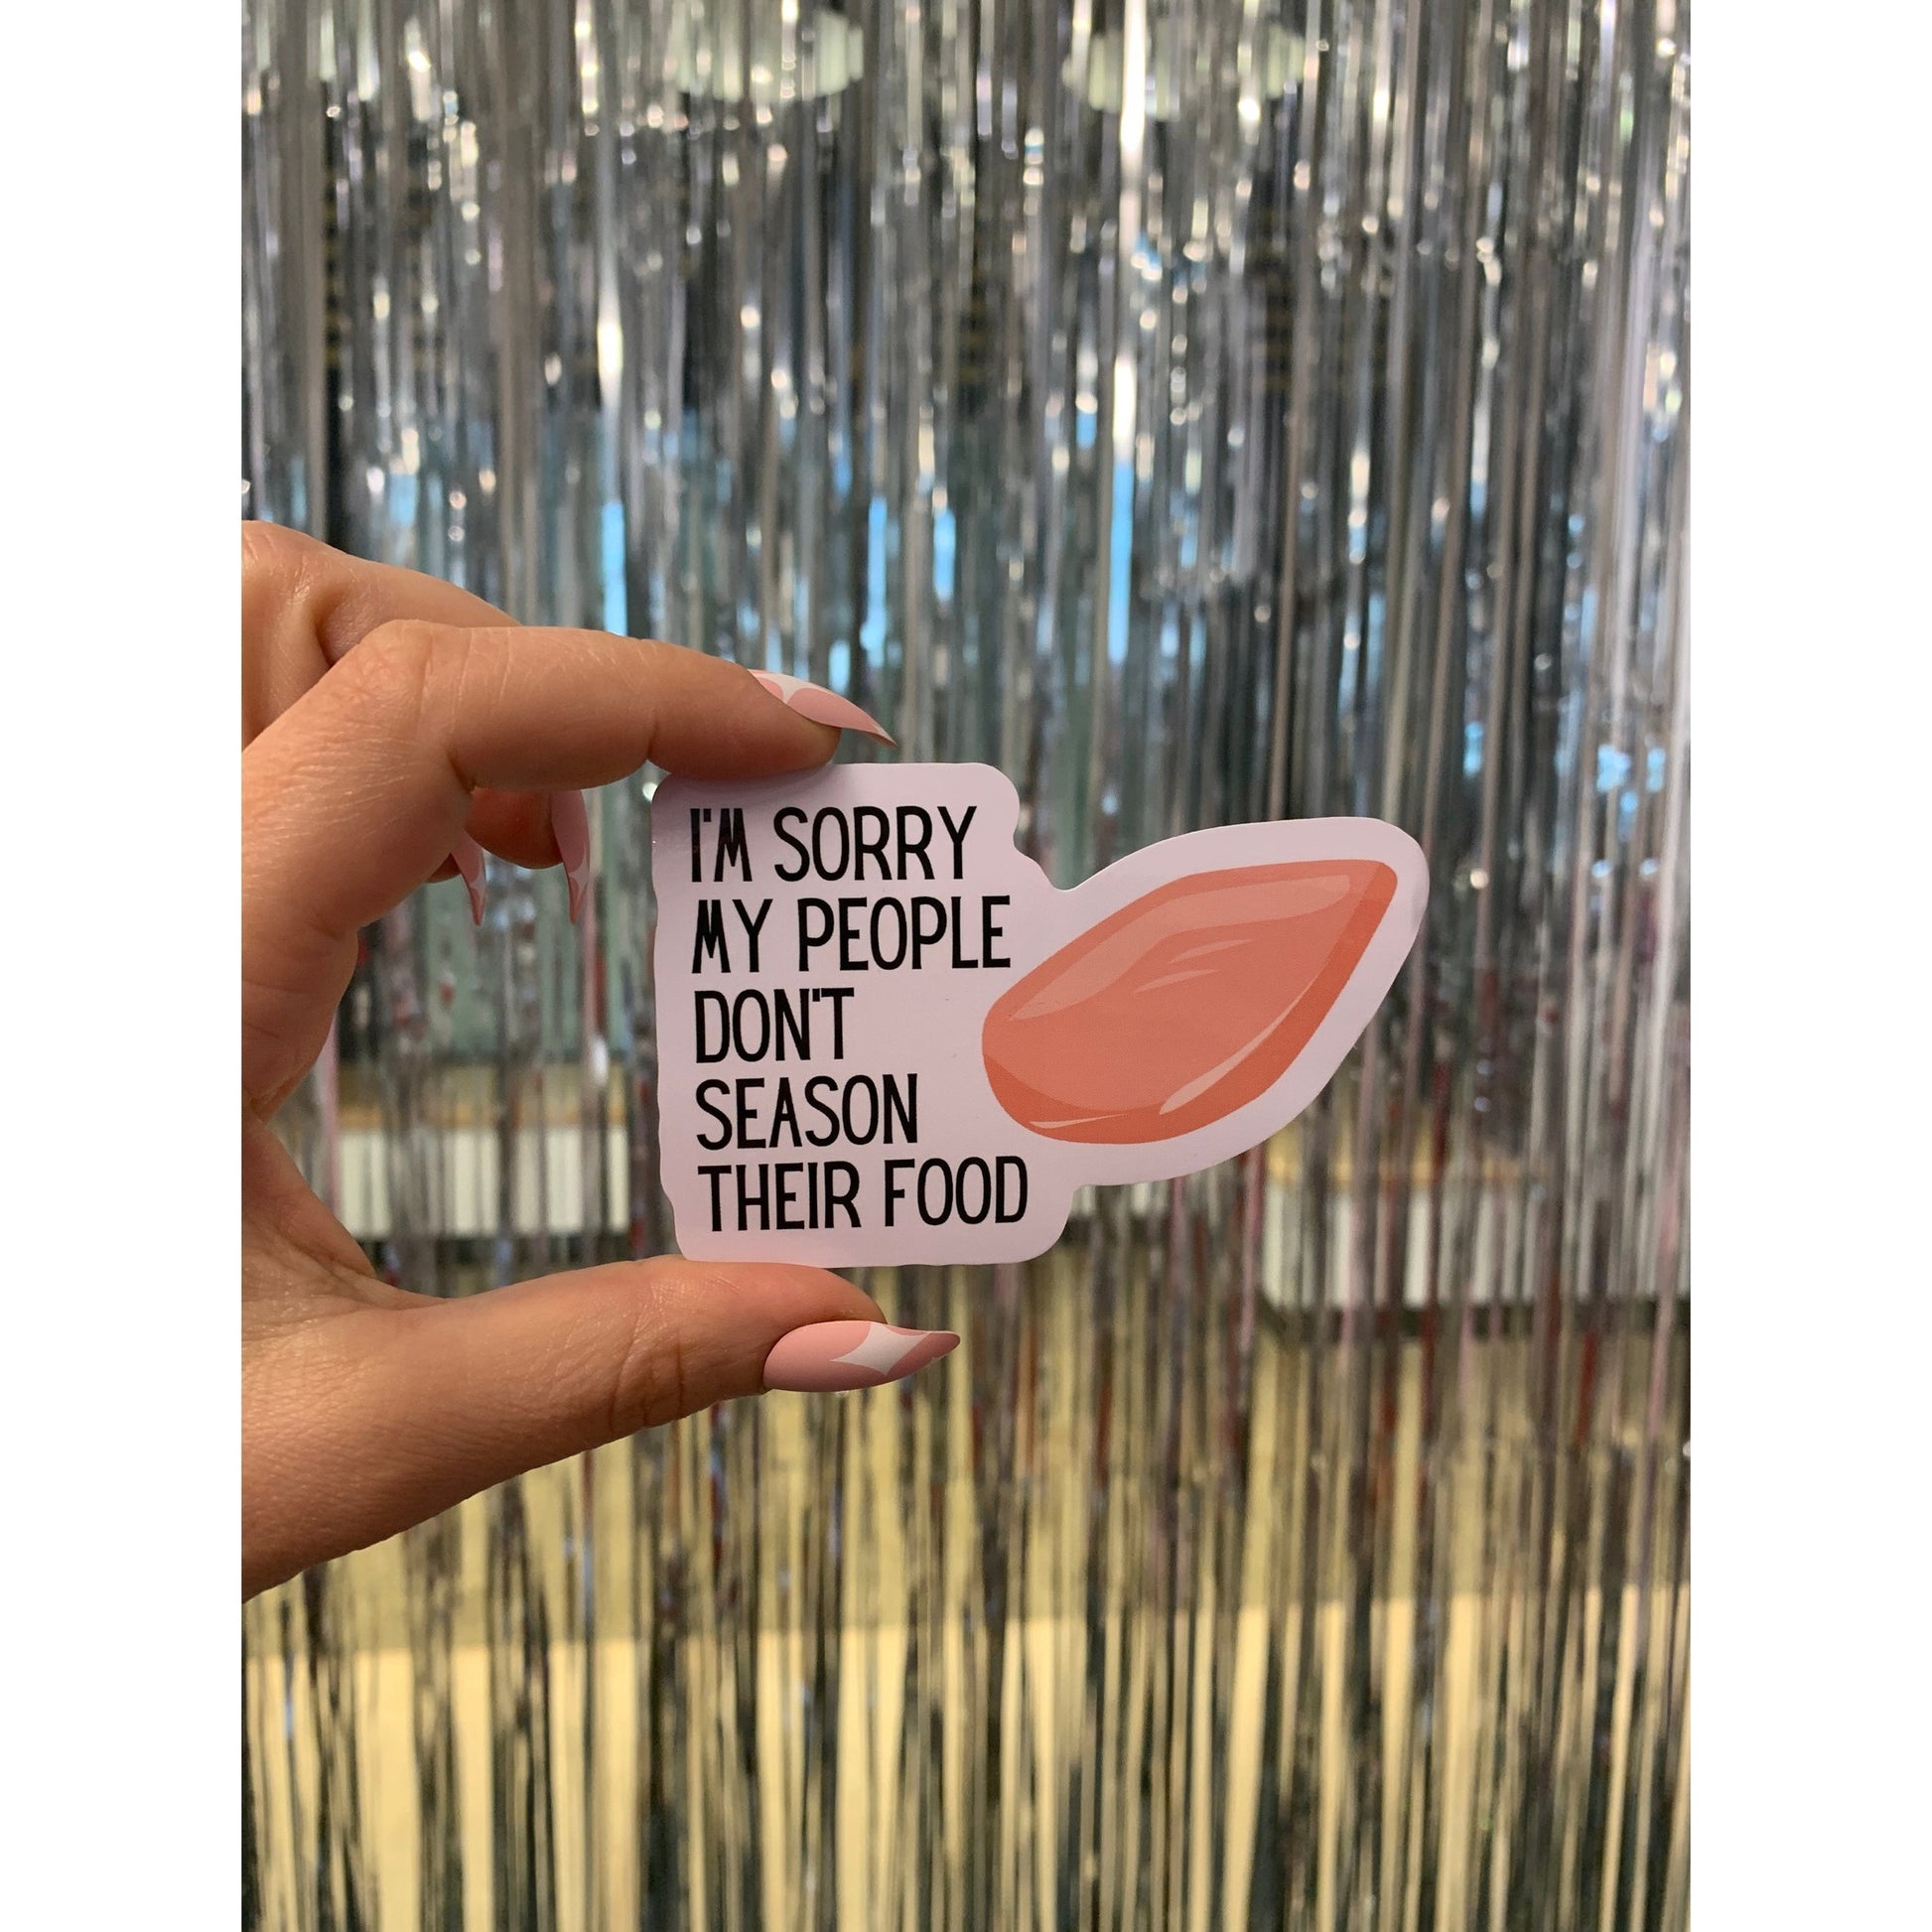 I'm Sorry My People Don't Season Their Food | Vinyl Die Cut Sticker